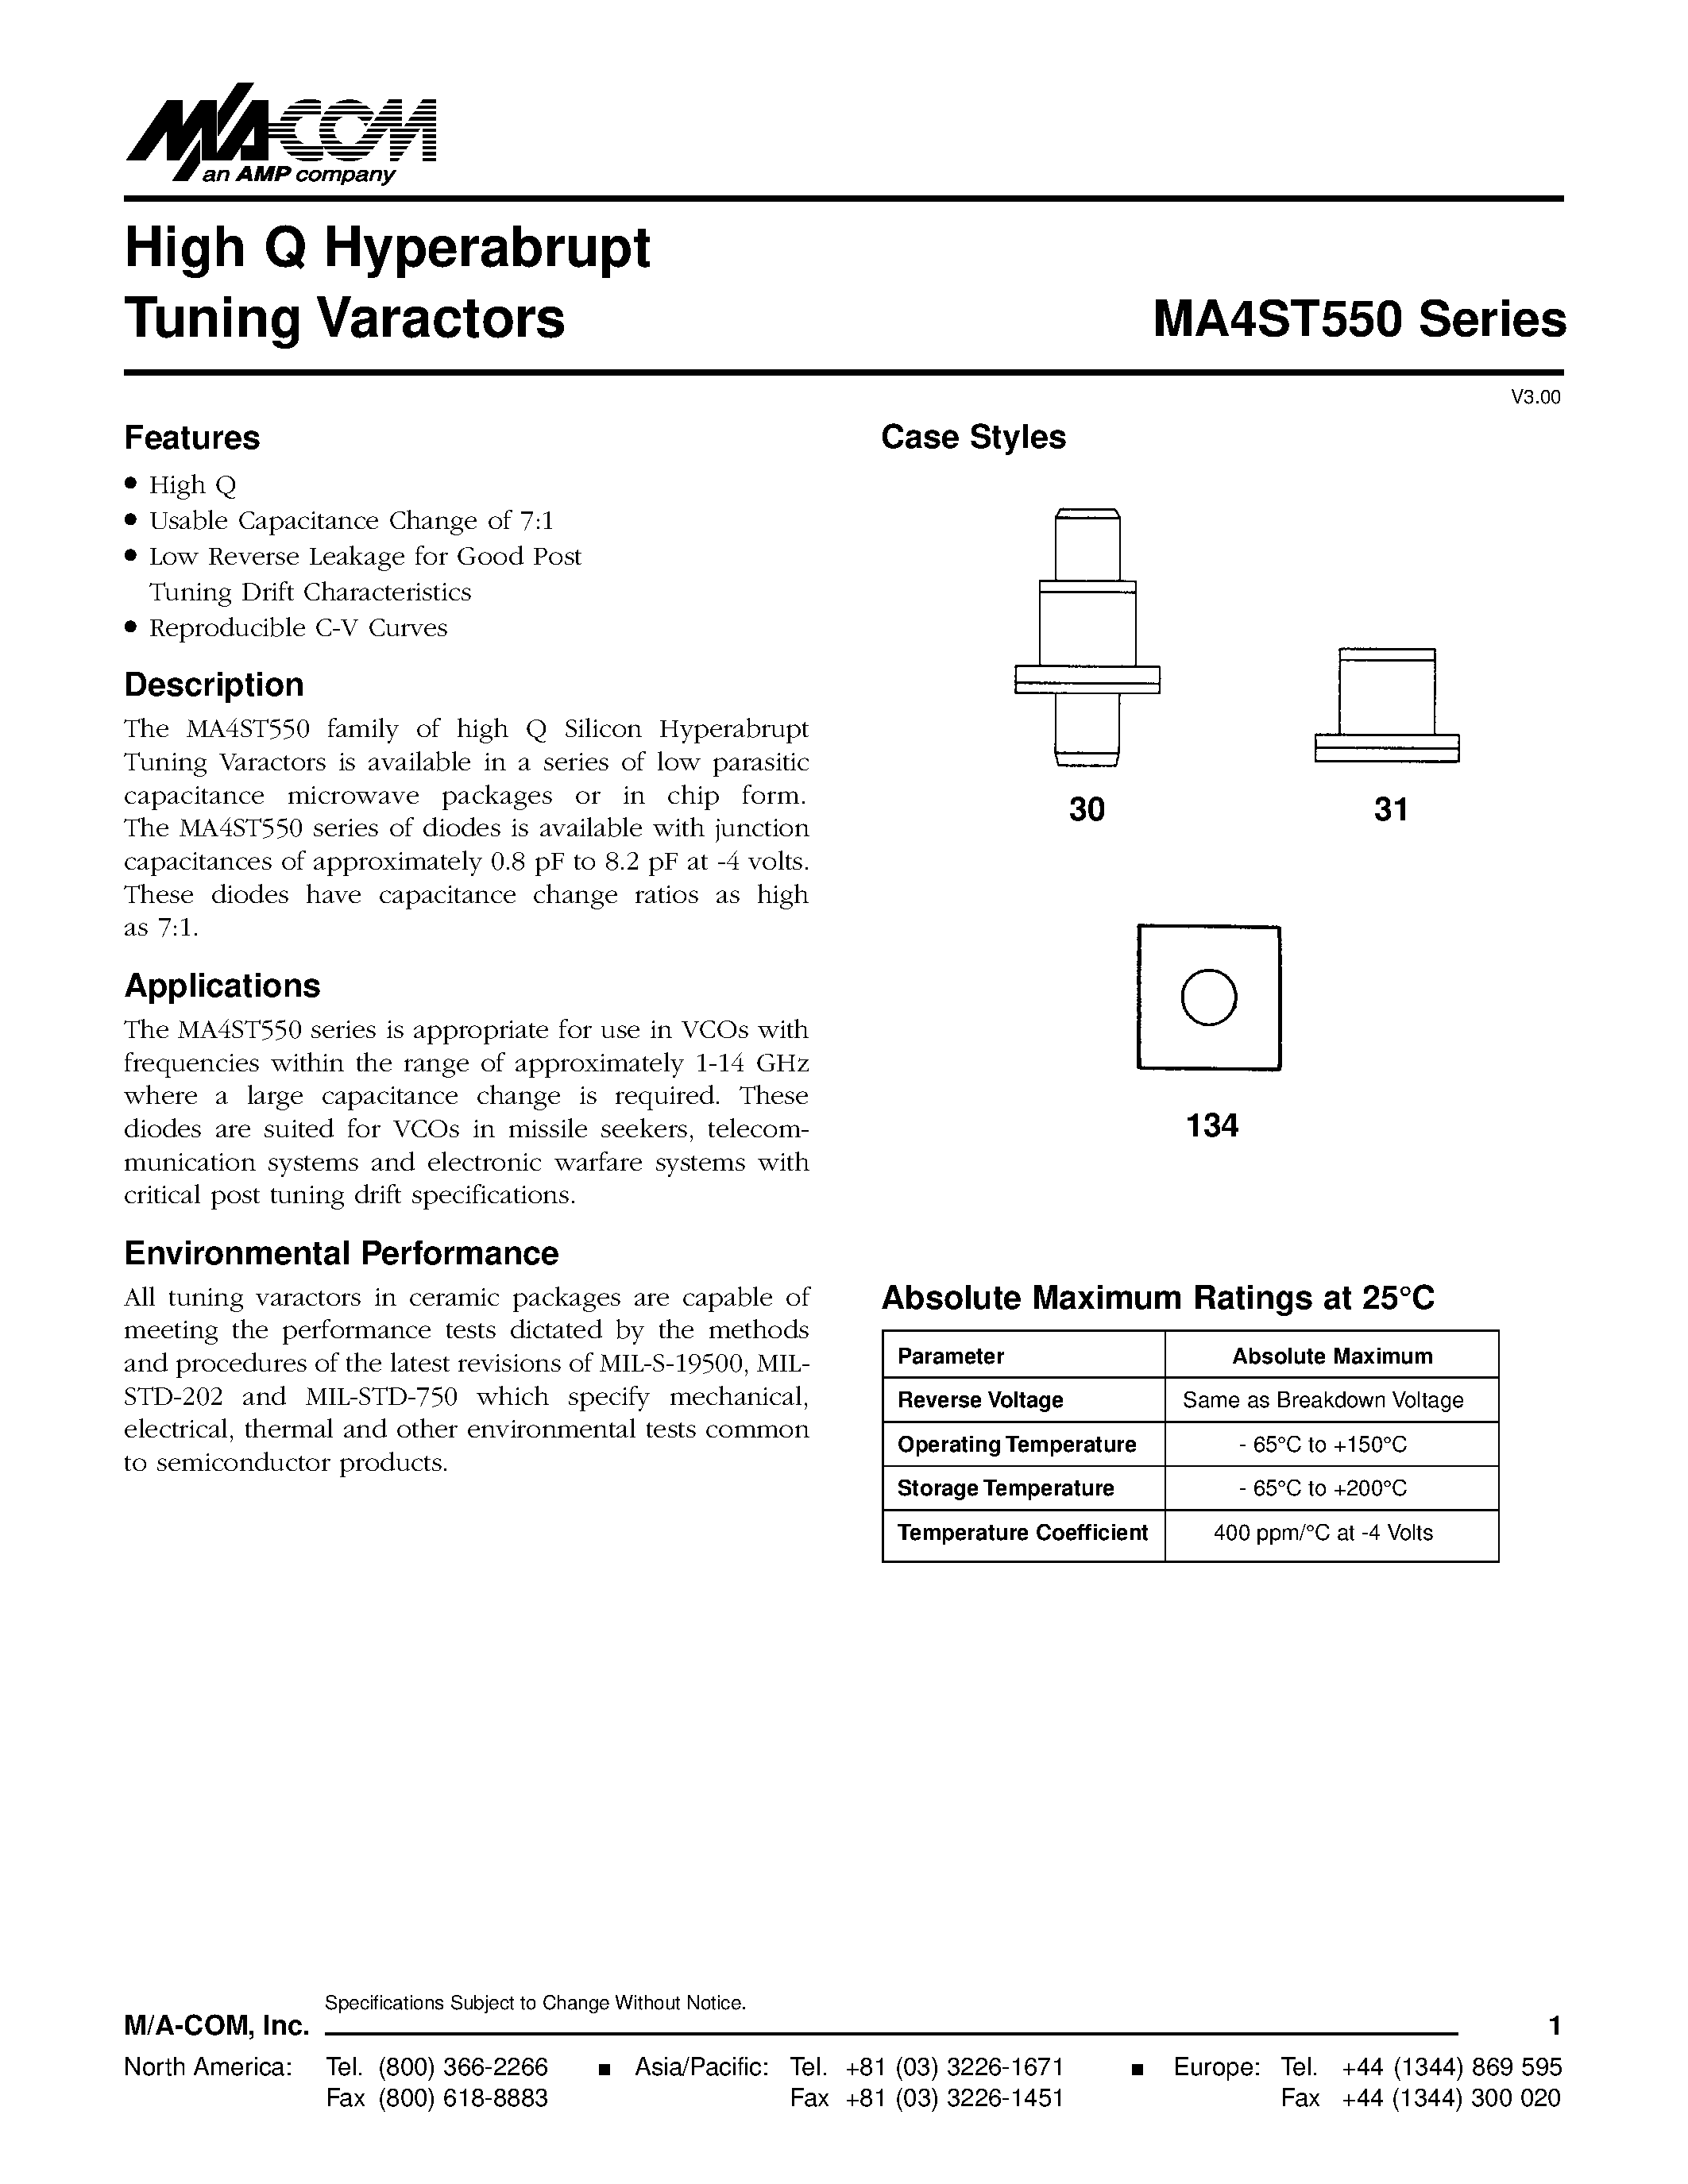 Даташит MA4ST558 - High Q Hyperabrupt Tuning Varactors страница 1